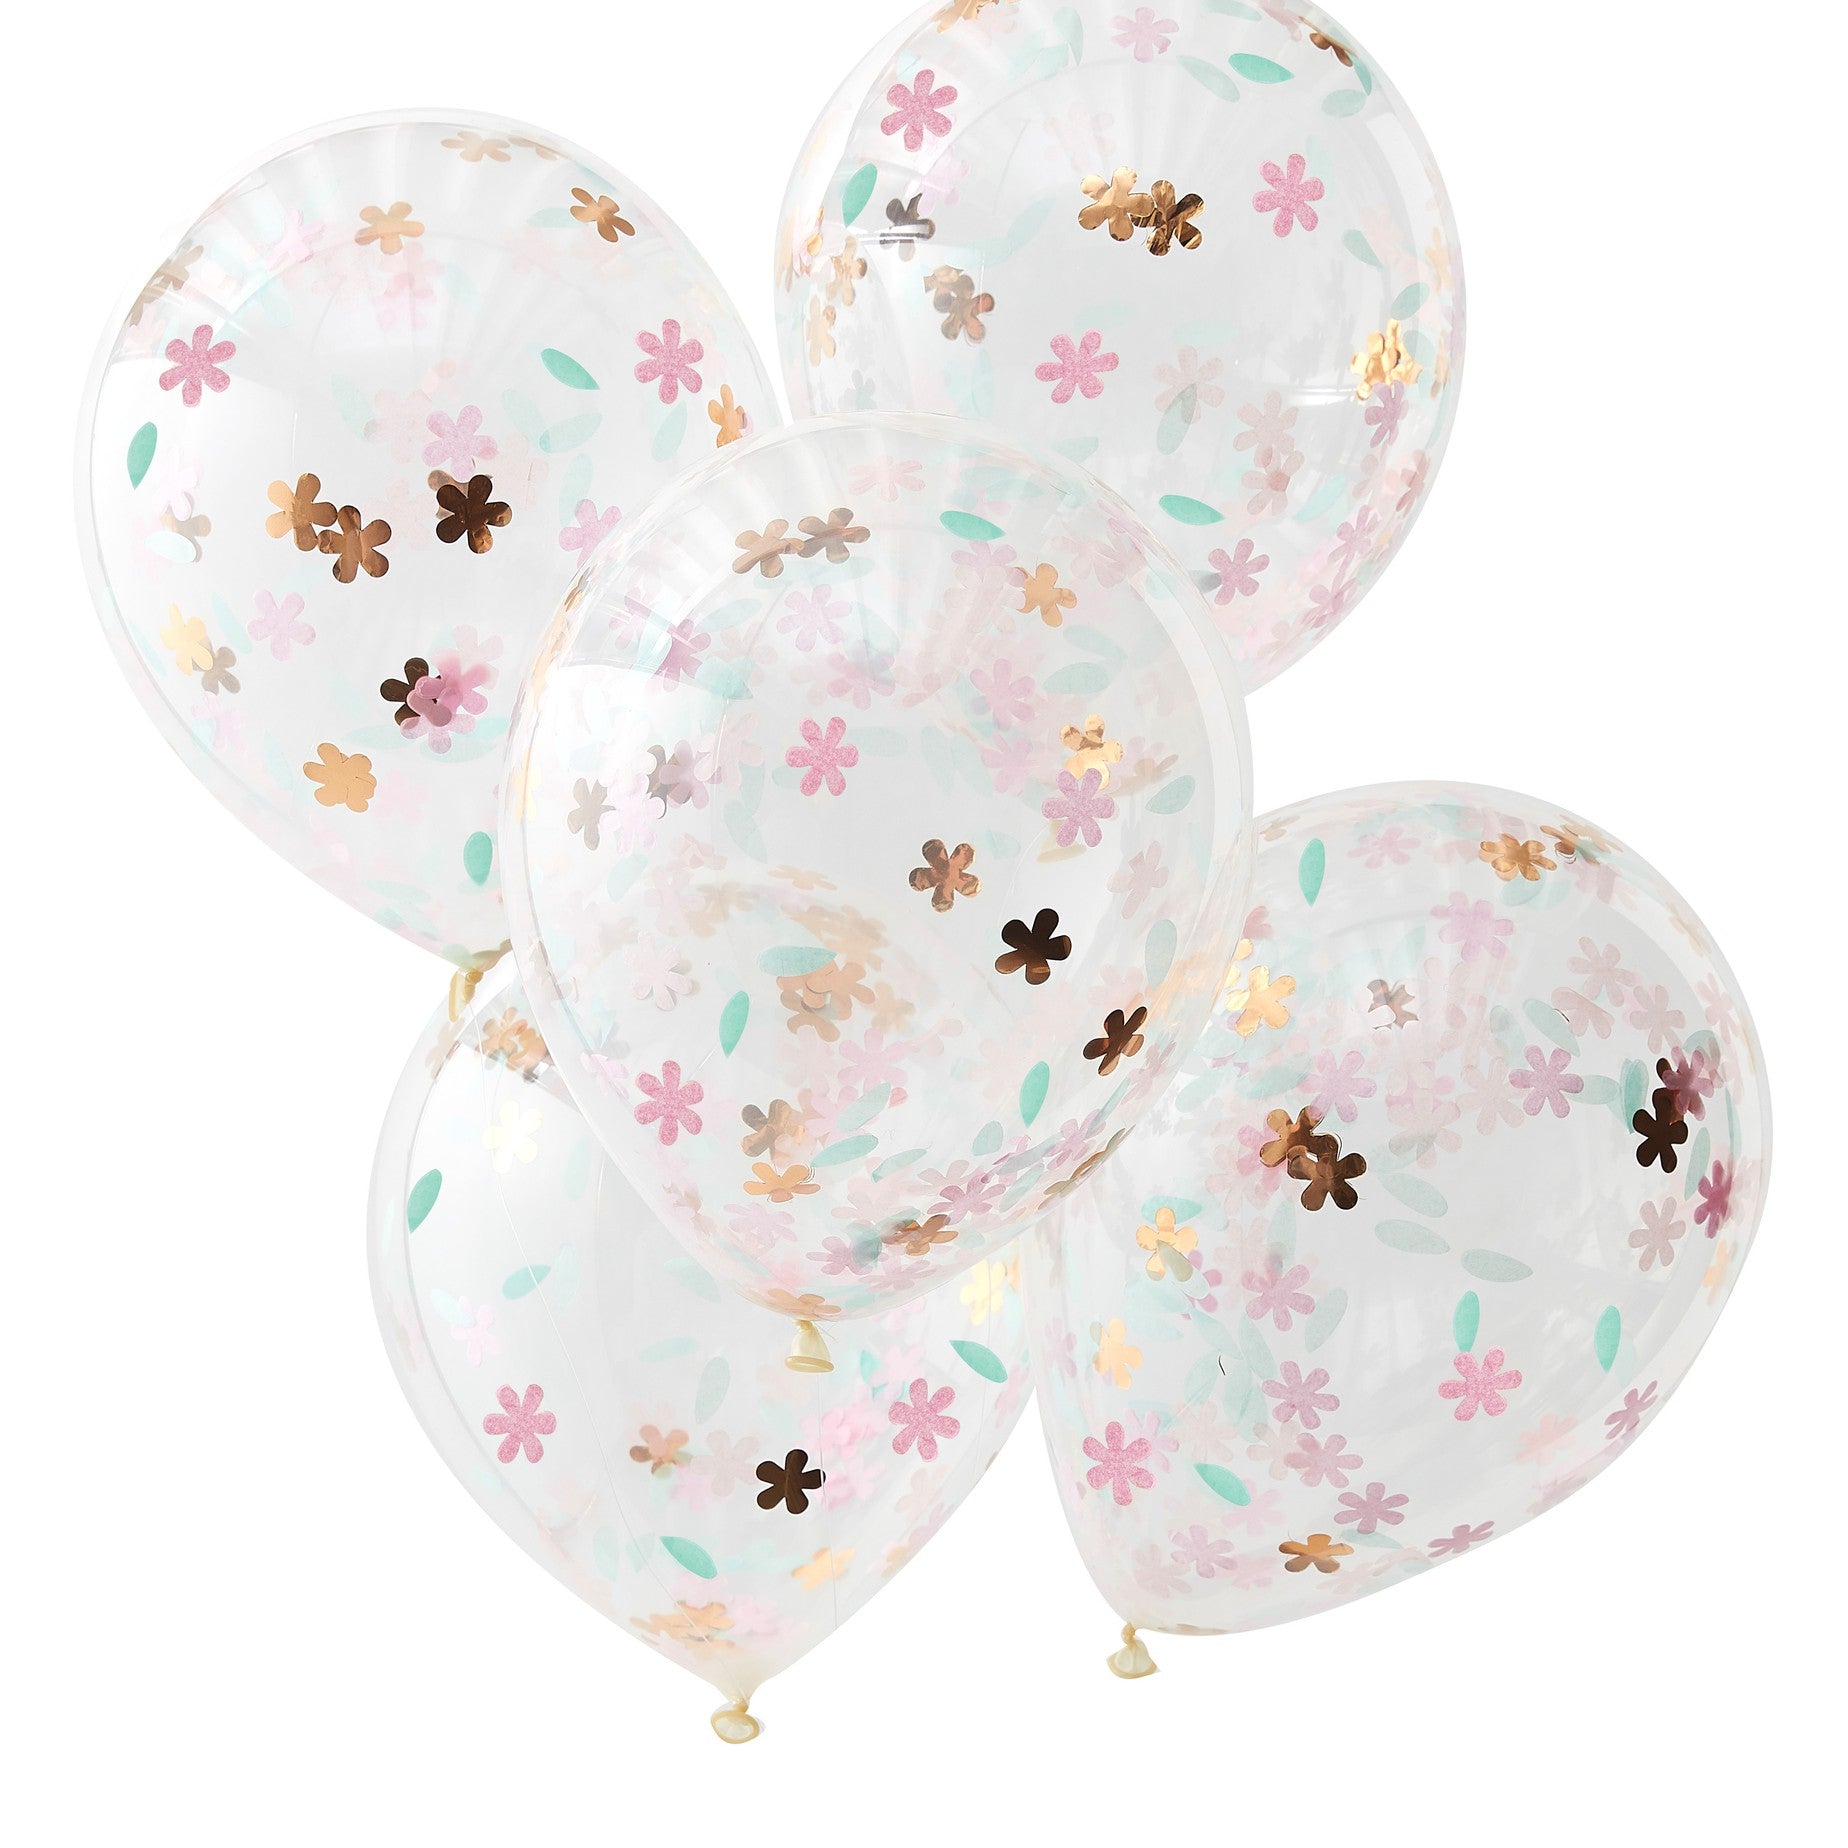 ballons confettis fleurs pastel pour déco evjf